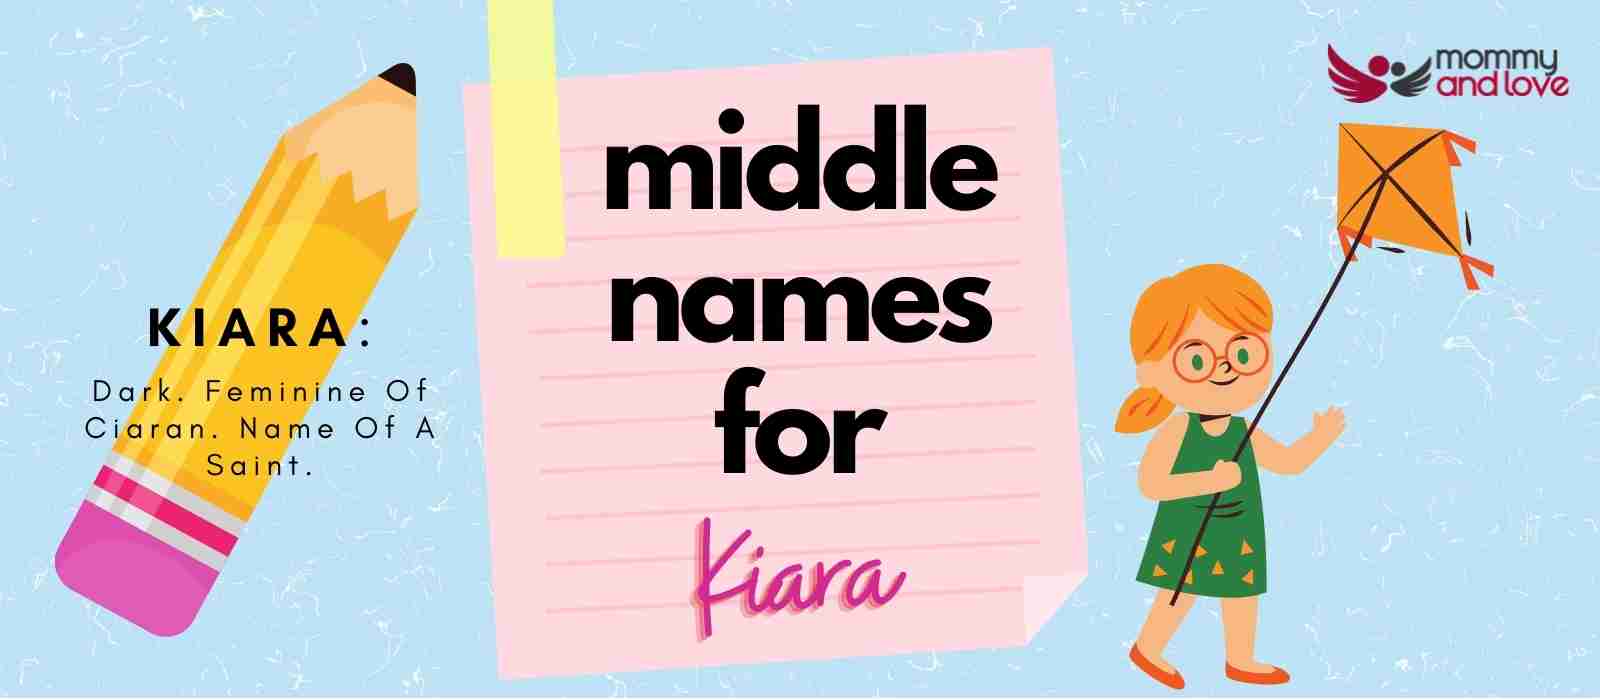 Middle Names for Kiara